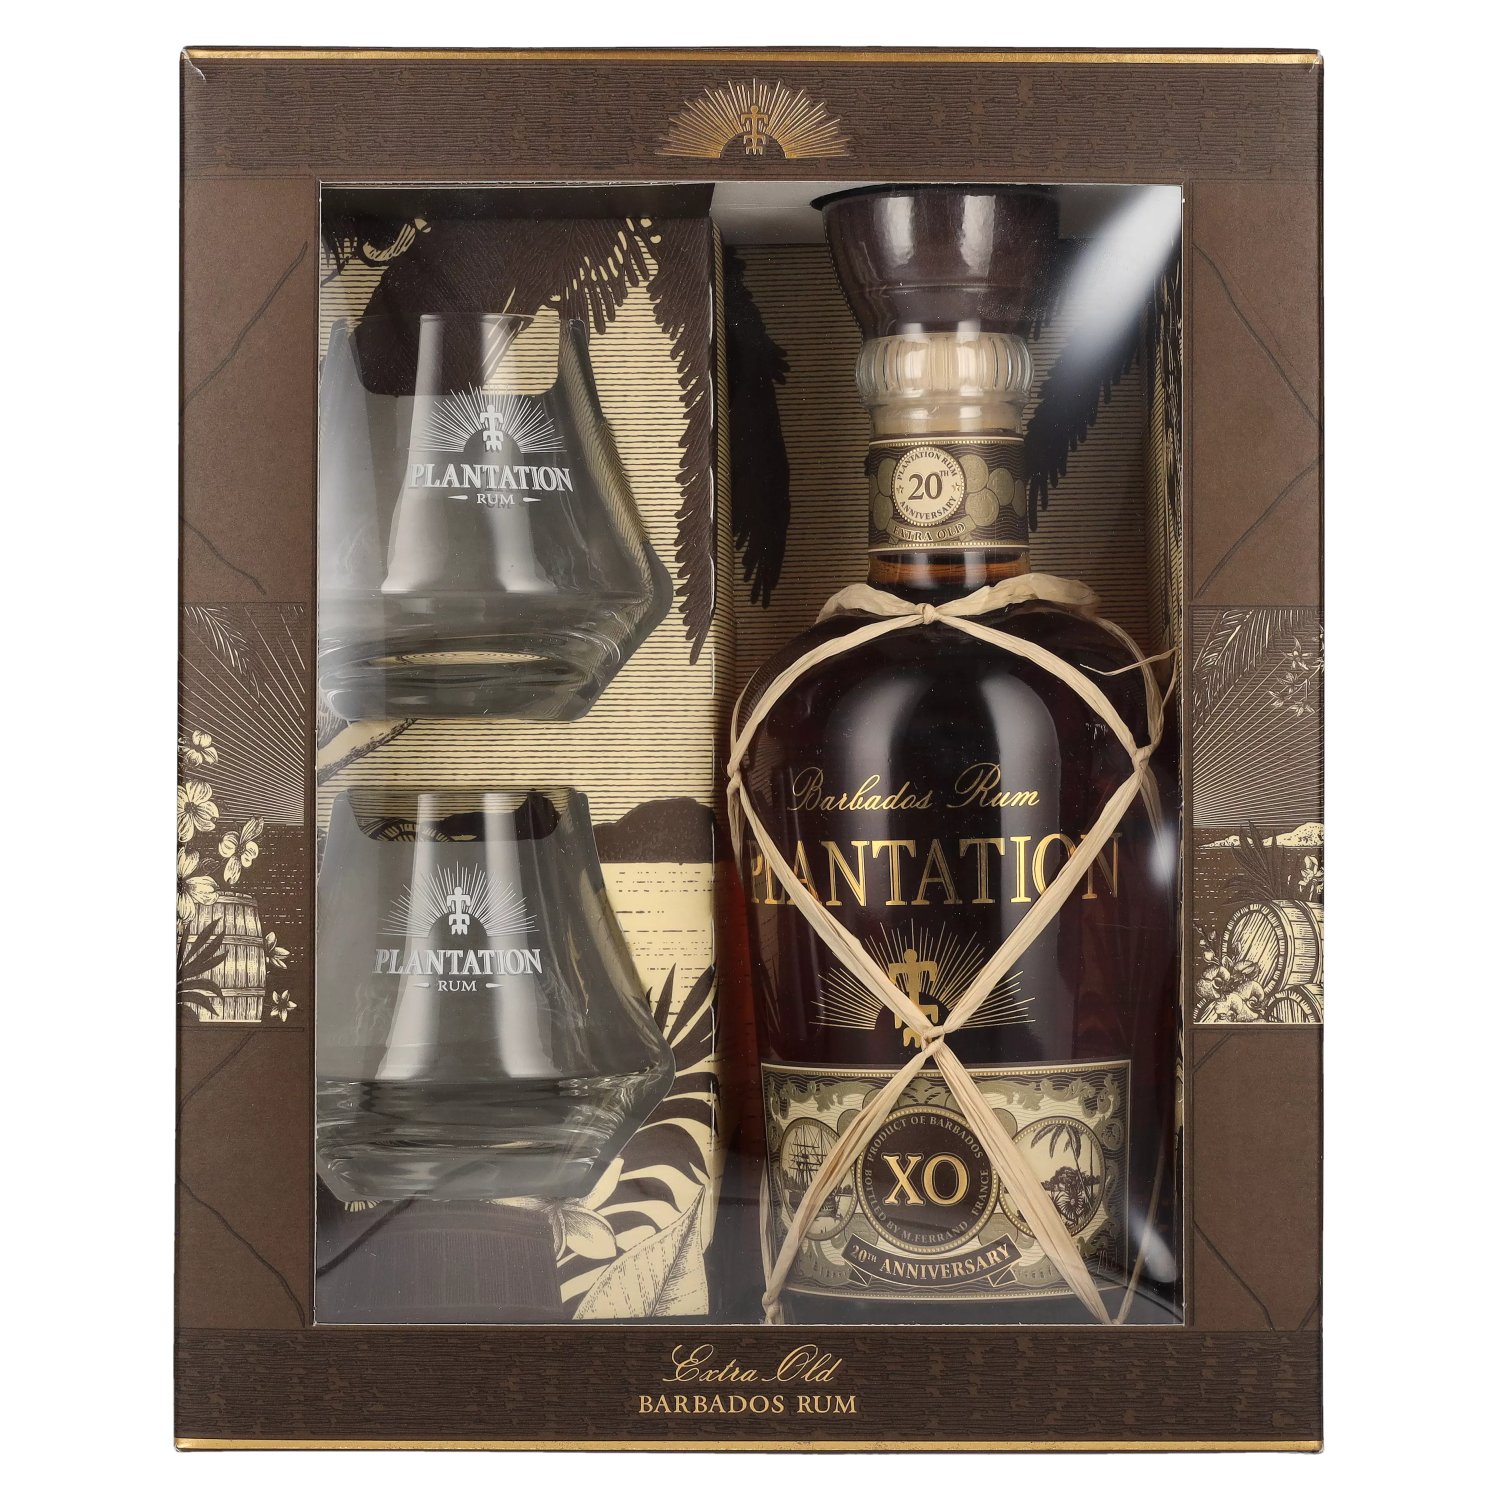 Plantation Rum BARBADOS XO 20th 40% 0,7l Gläsern Anniversary 2 mit Geschenkbox in Vol